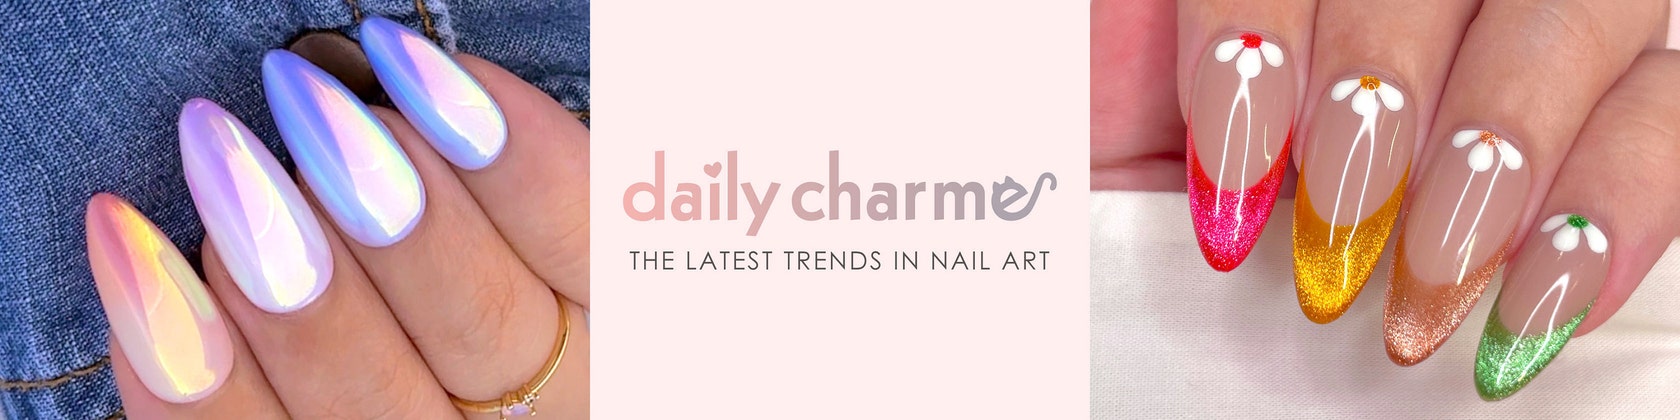 Daily Charme Nail Art Brush / 01 Thin Liner